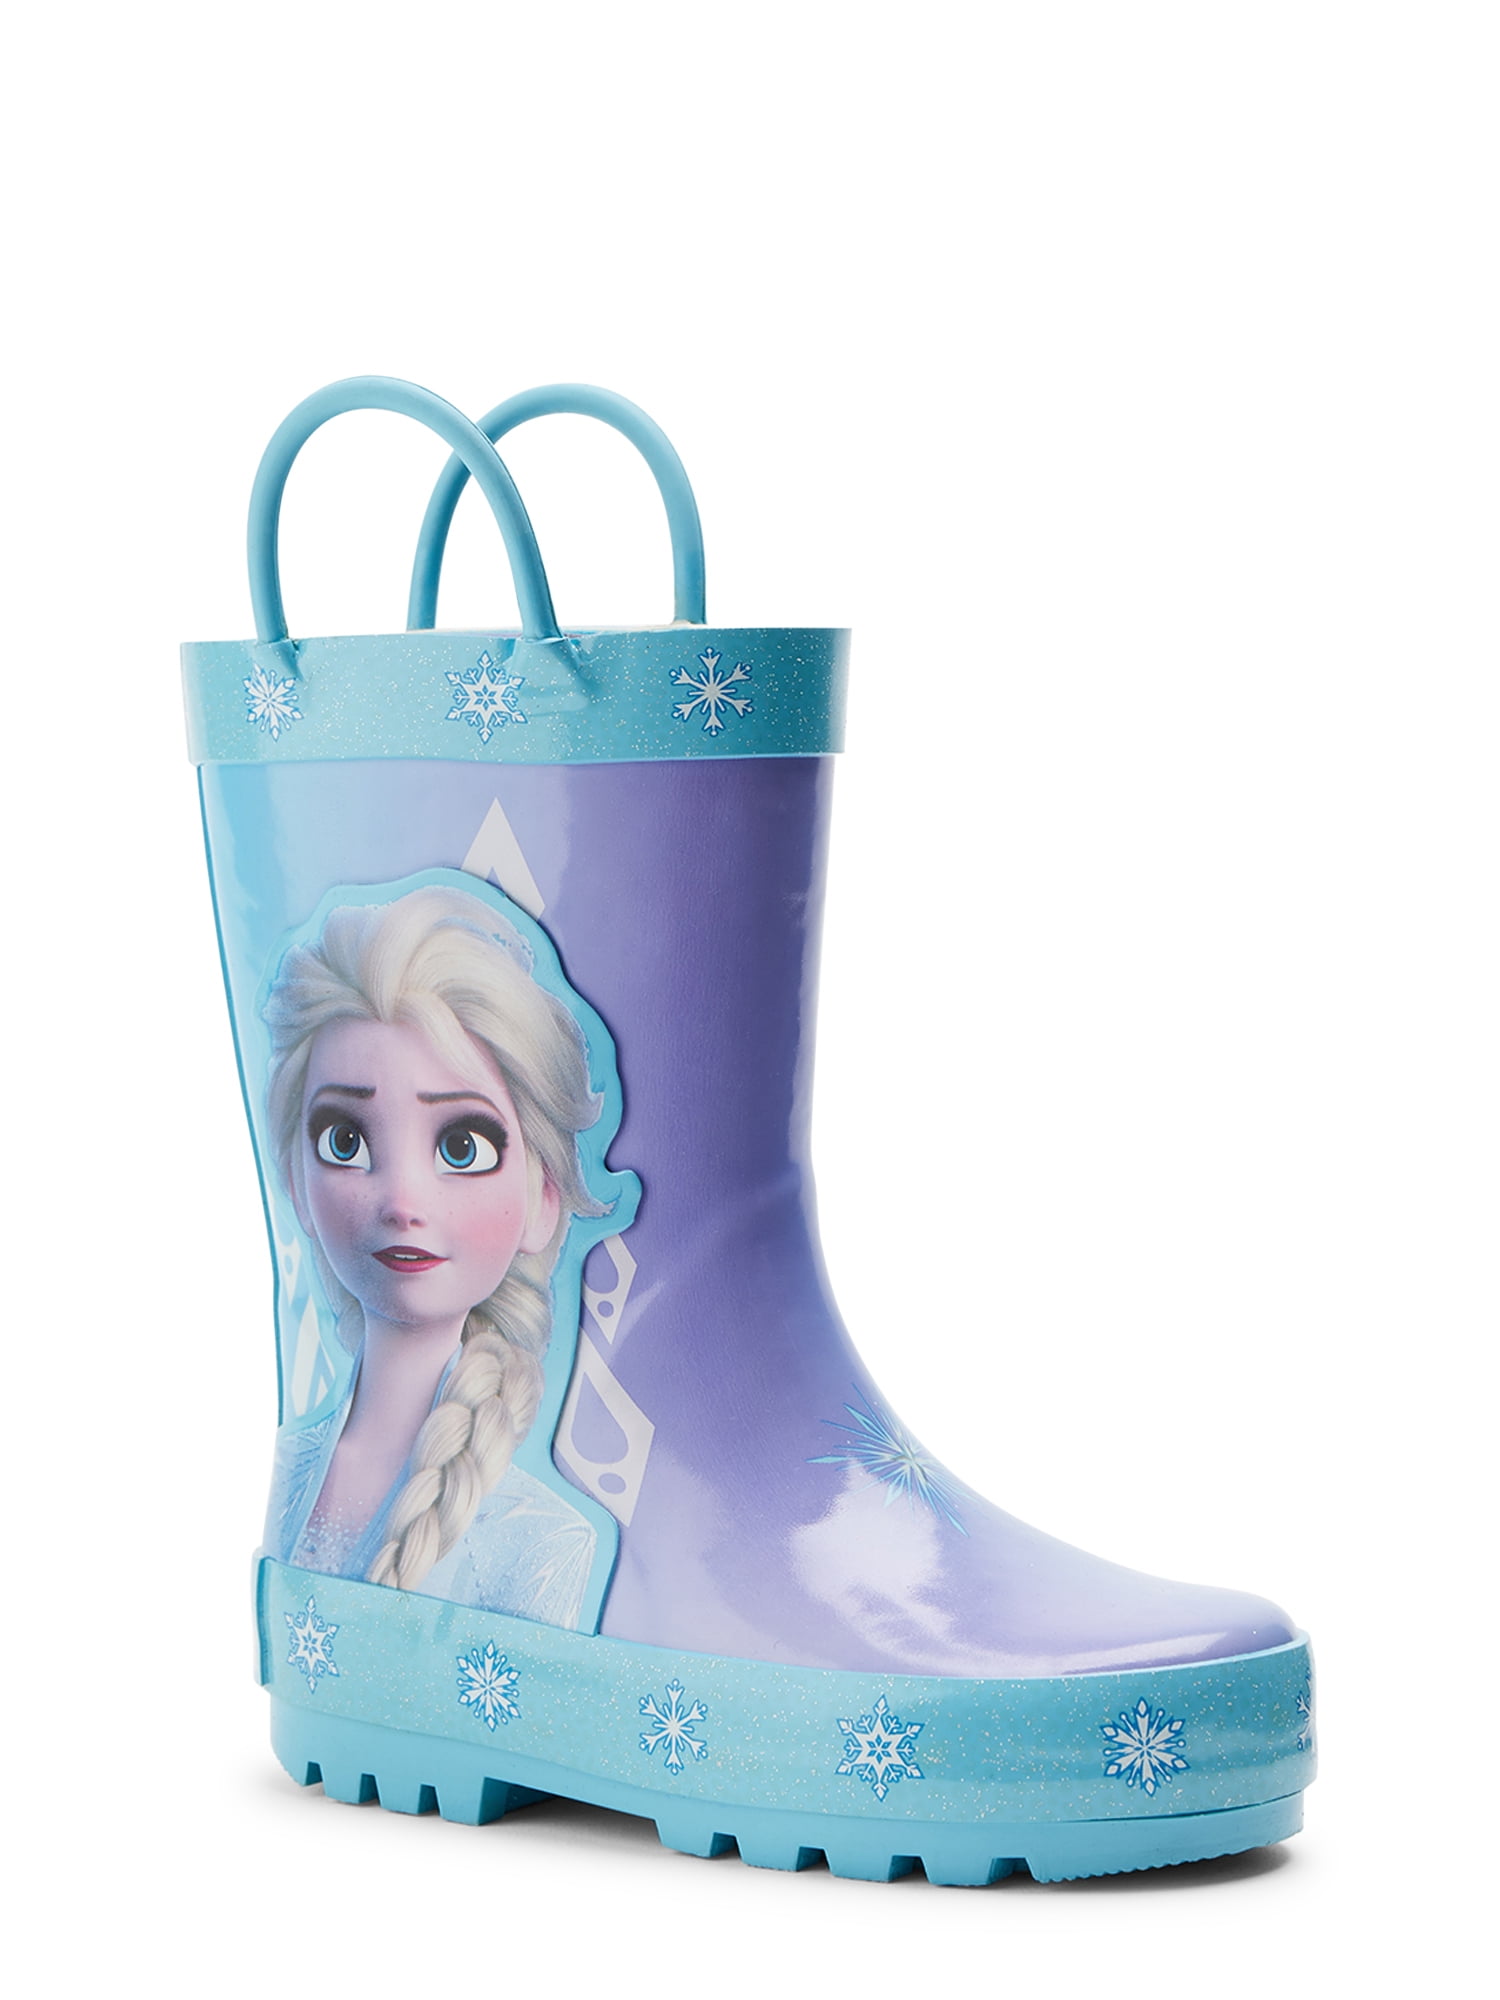 Details about   Frozen II Sleeping Bag Outdoor Indoor Elsa Anna Travel Girls Camping Kids 